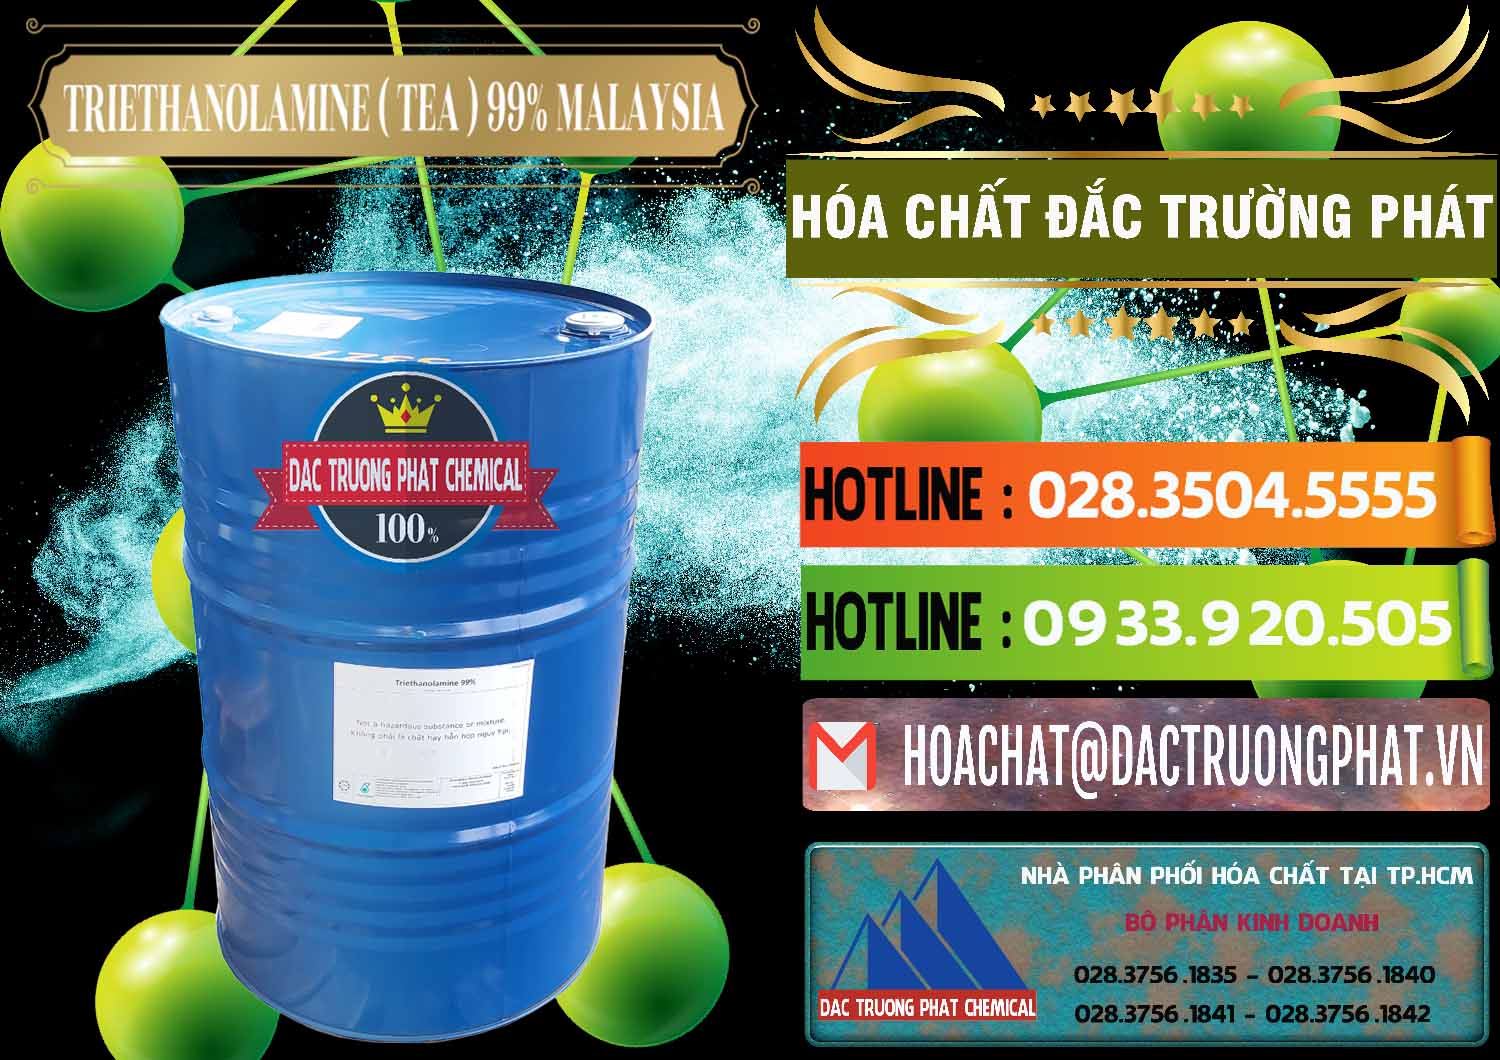 Cty chuyên cung ứng _ bán TEA - Triethanolamine 99% Mã Lai Malaysia - 0323 - Nhà phân phối _ cung ứng hóa chất tại TP.HCM - cungcaphoachat.com.vn